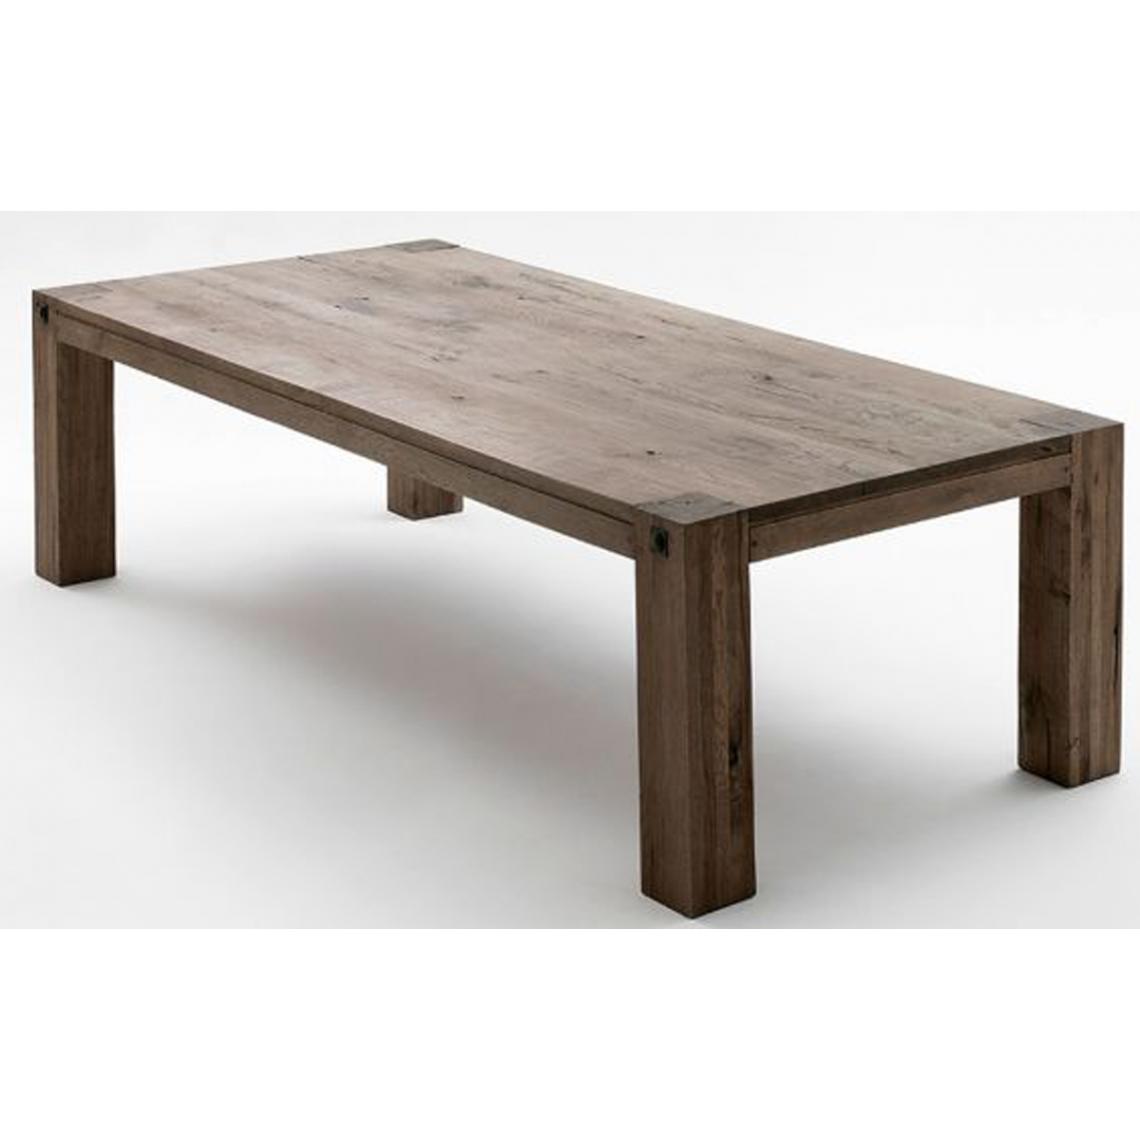 Pegane - Table à manger en chêne massif patiné laqué - L.180 x H.76 x P.90 cm - Tables à manger